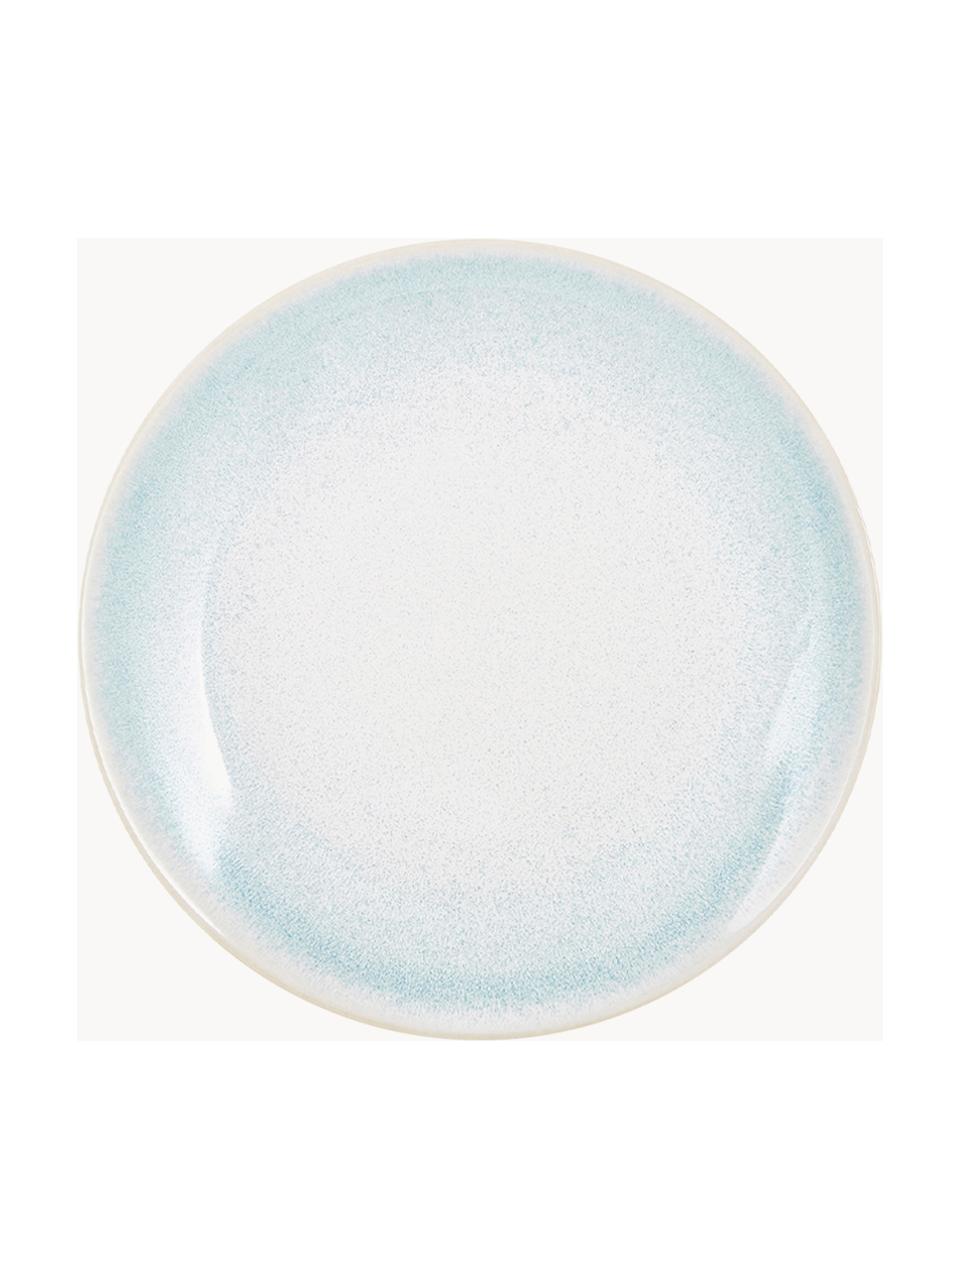 Ręcznie wykonany talerz śniadaniowy Amalia, 2 szt., Porcelana, Jasny niebieski, kremowy, Ø 20 cm